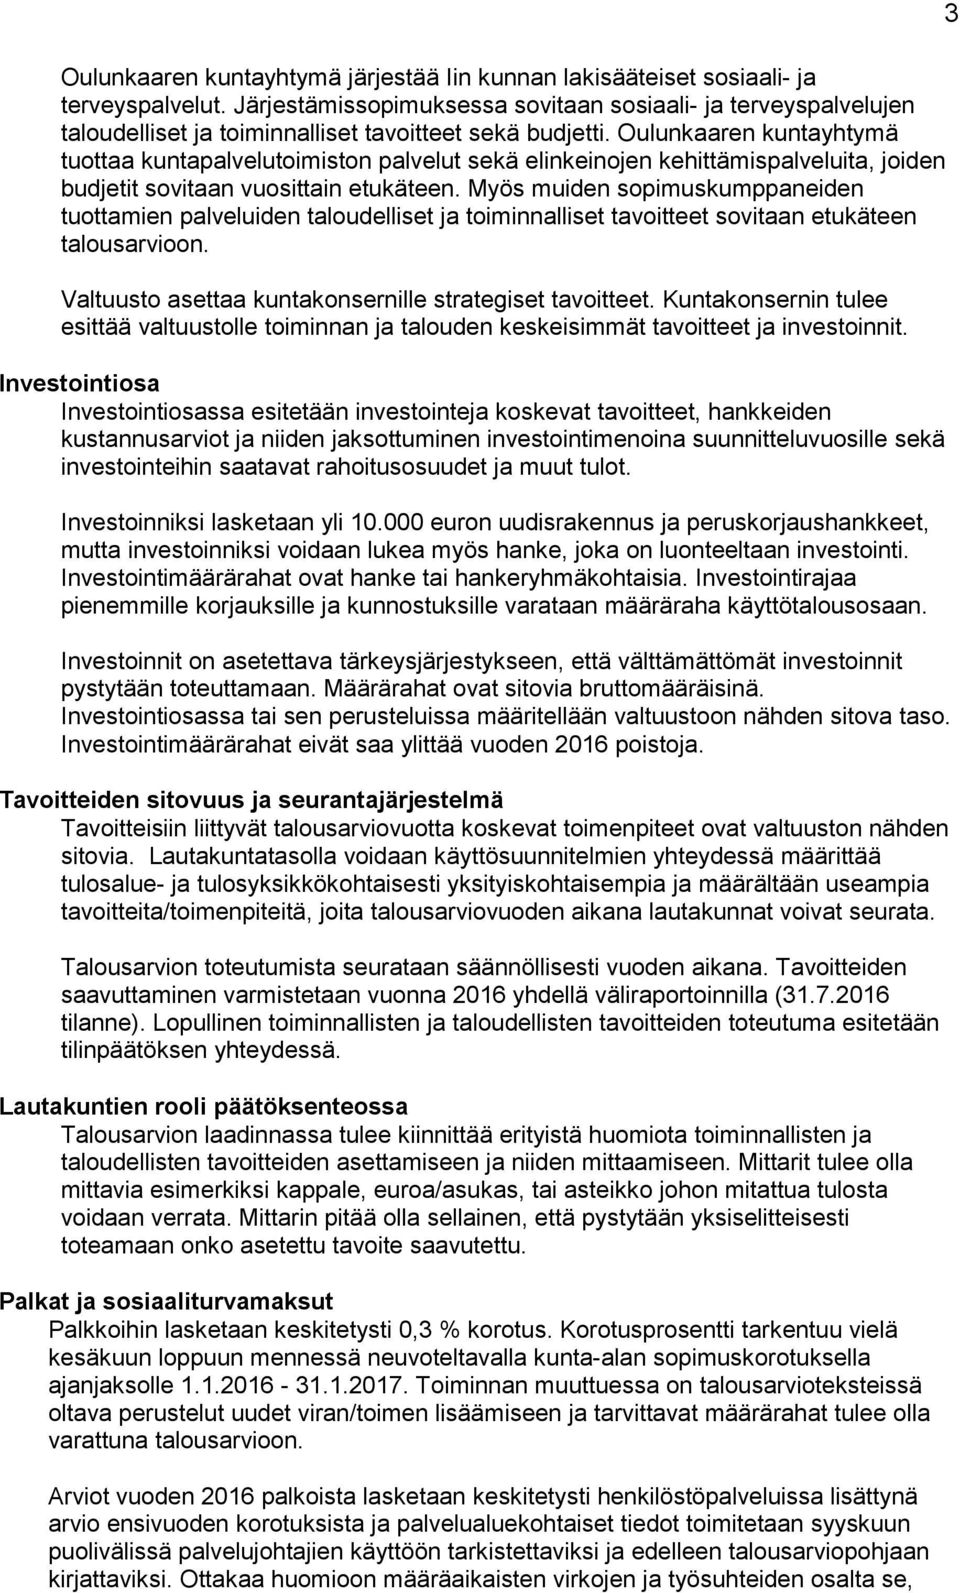 Oulunkaaren kuntayhtymä tuottaa kuntapalvelutoimiston palvelut sekä elinkeinojen kehittämispalveluita, joiden budjetit sovitaan vuosittain etukäteen.